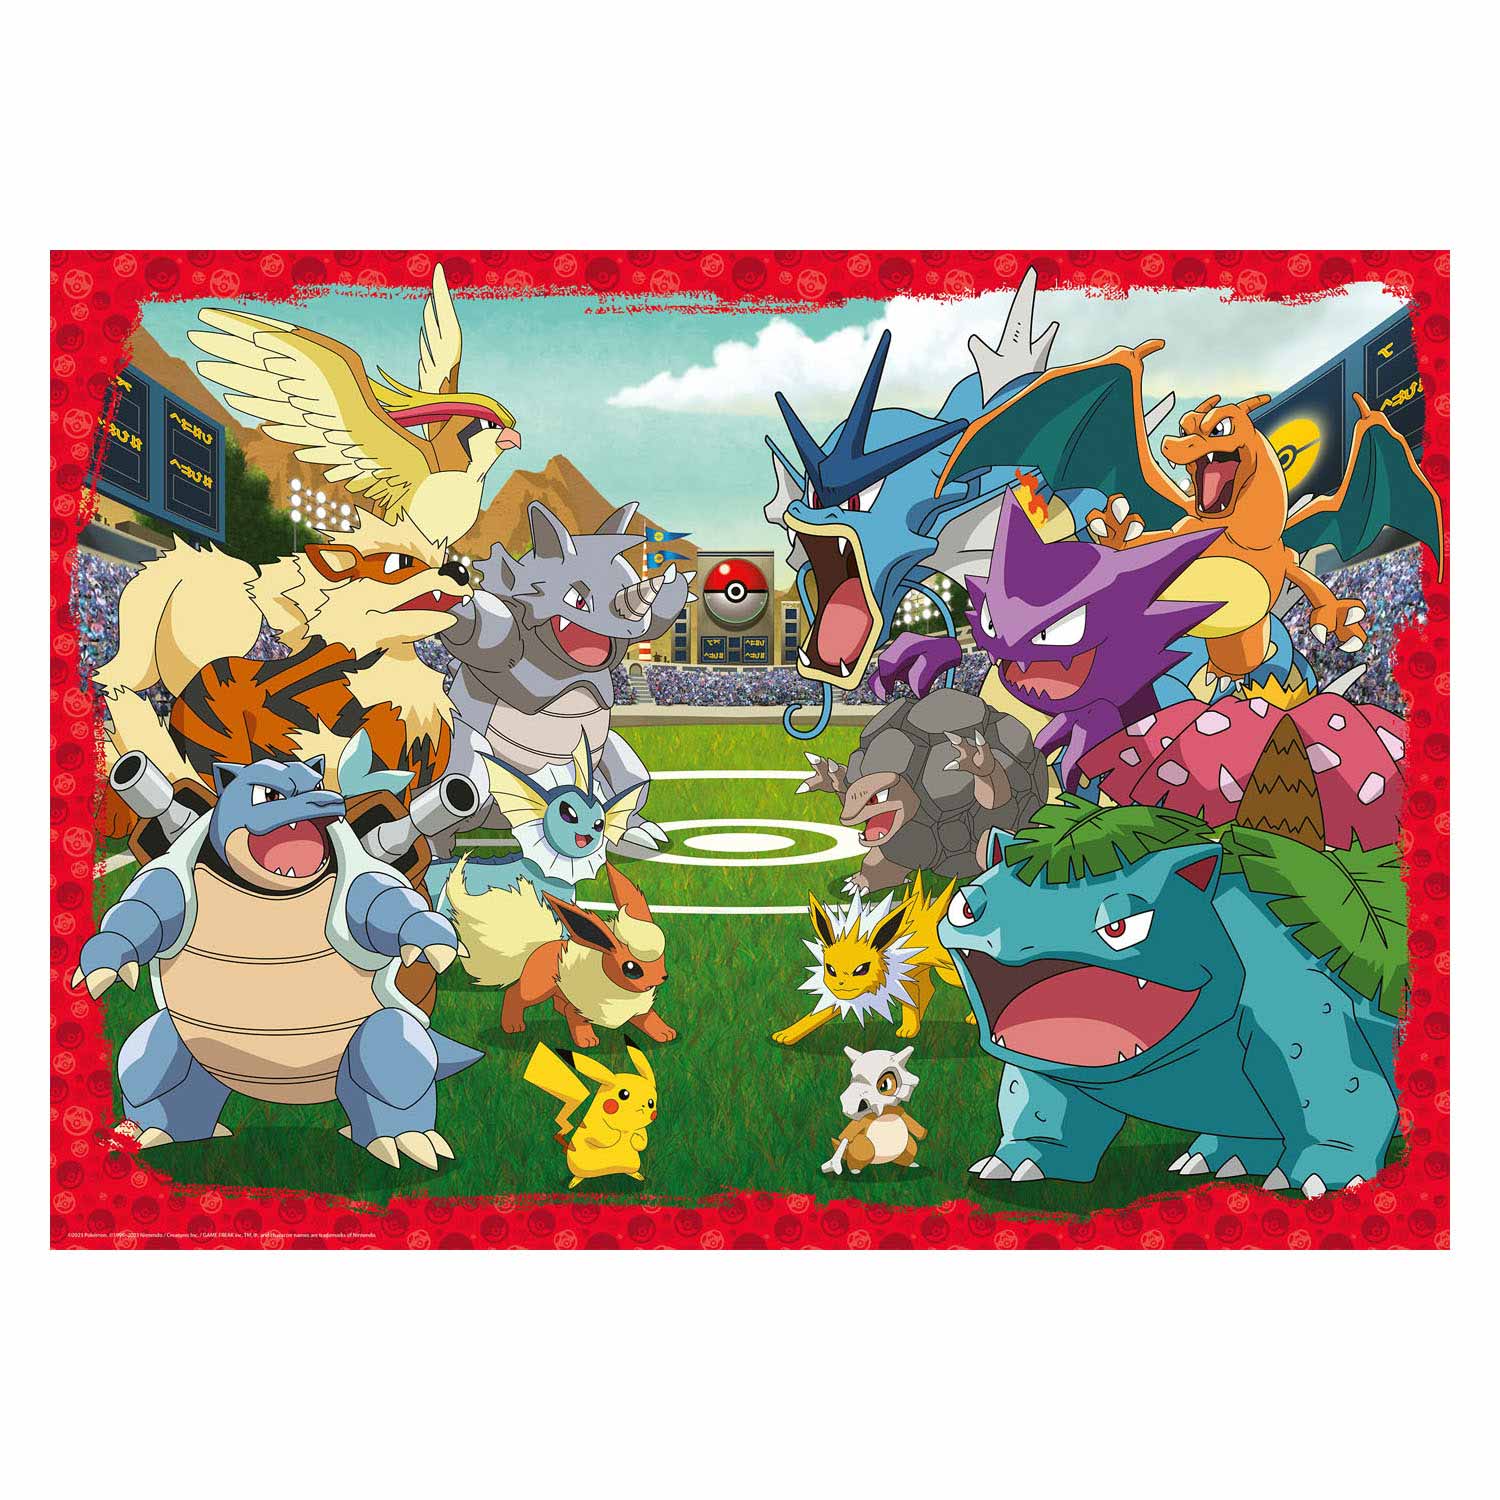 Ravensburger Puzzle Confrontation entre Pokémon, 1000 pcs.